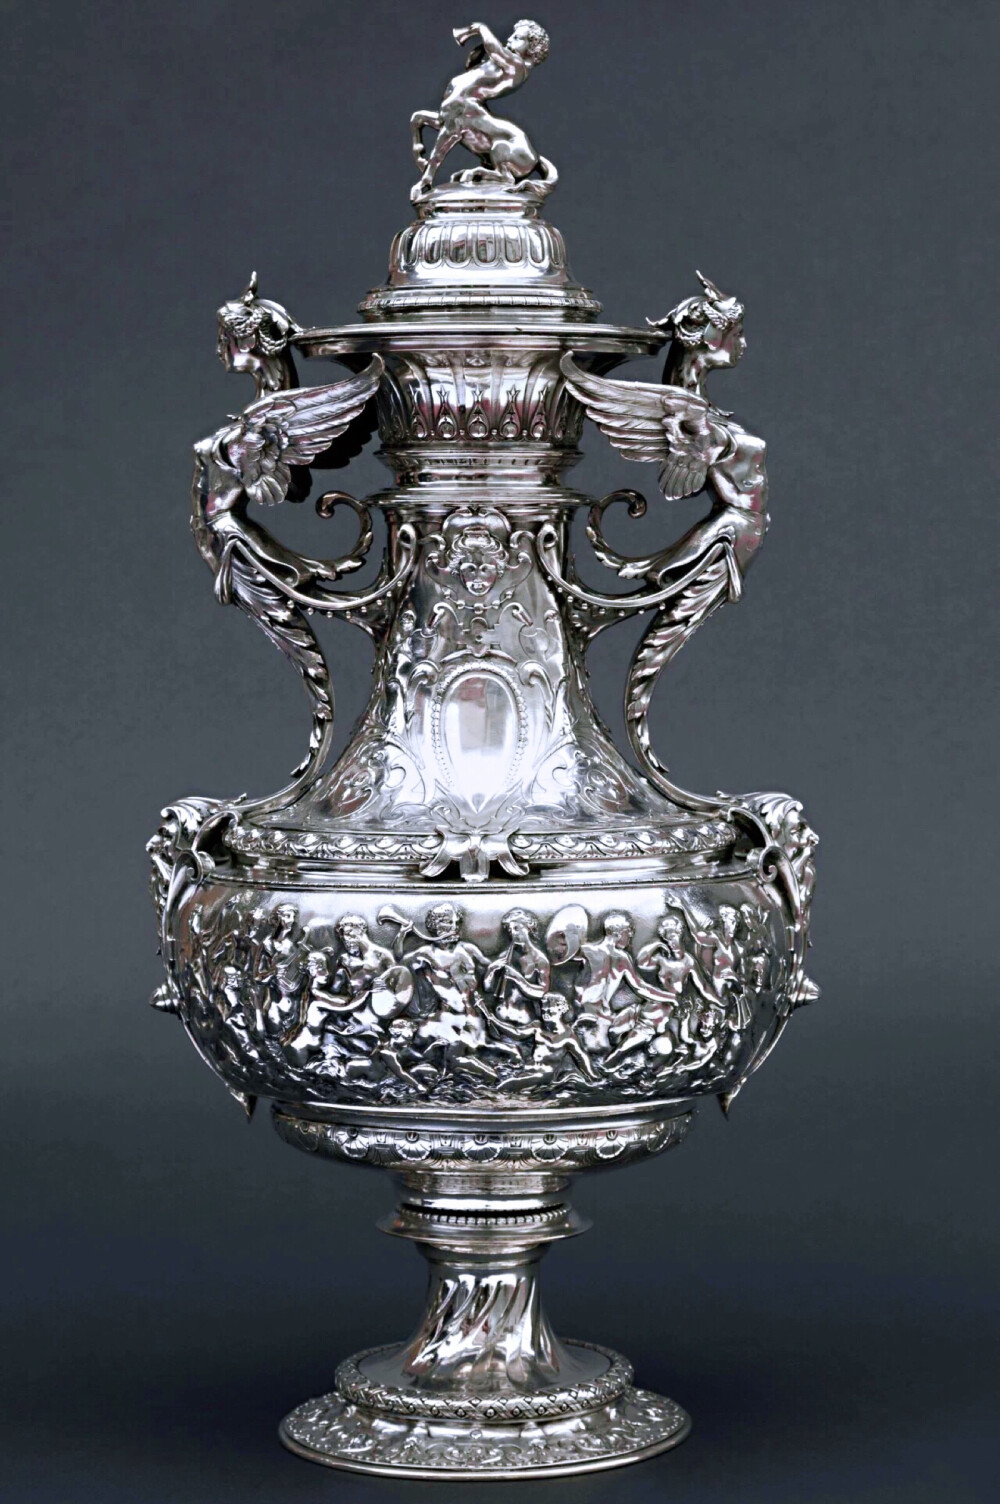 纯银奖杯由19世纪法国皇家御用银匠工坊奥迪欧与Froment-Meurice合作完成，为1870年代法国赛马会定制之作。与罗斯柴尔德家族成员藏品十分相似，曾为法国伯爵珍藏并在巴黎国际博览会上展出，是博物馆藏品级别的珍稀杰作。